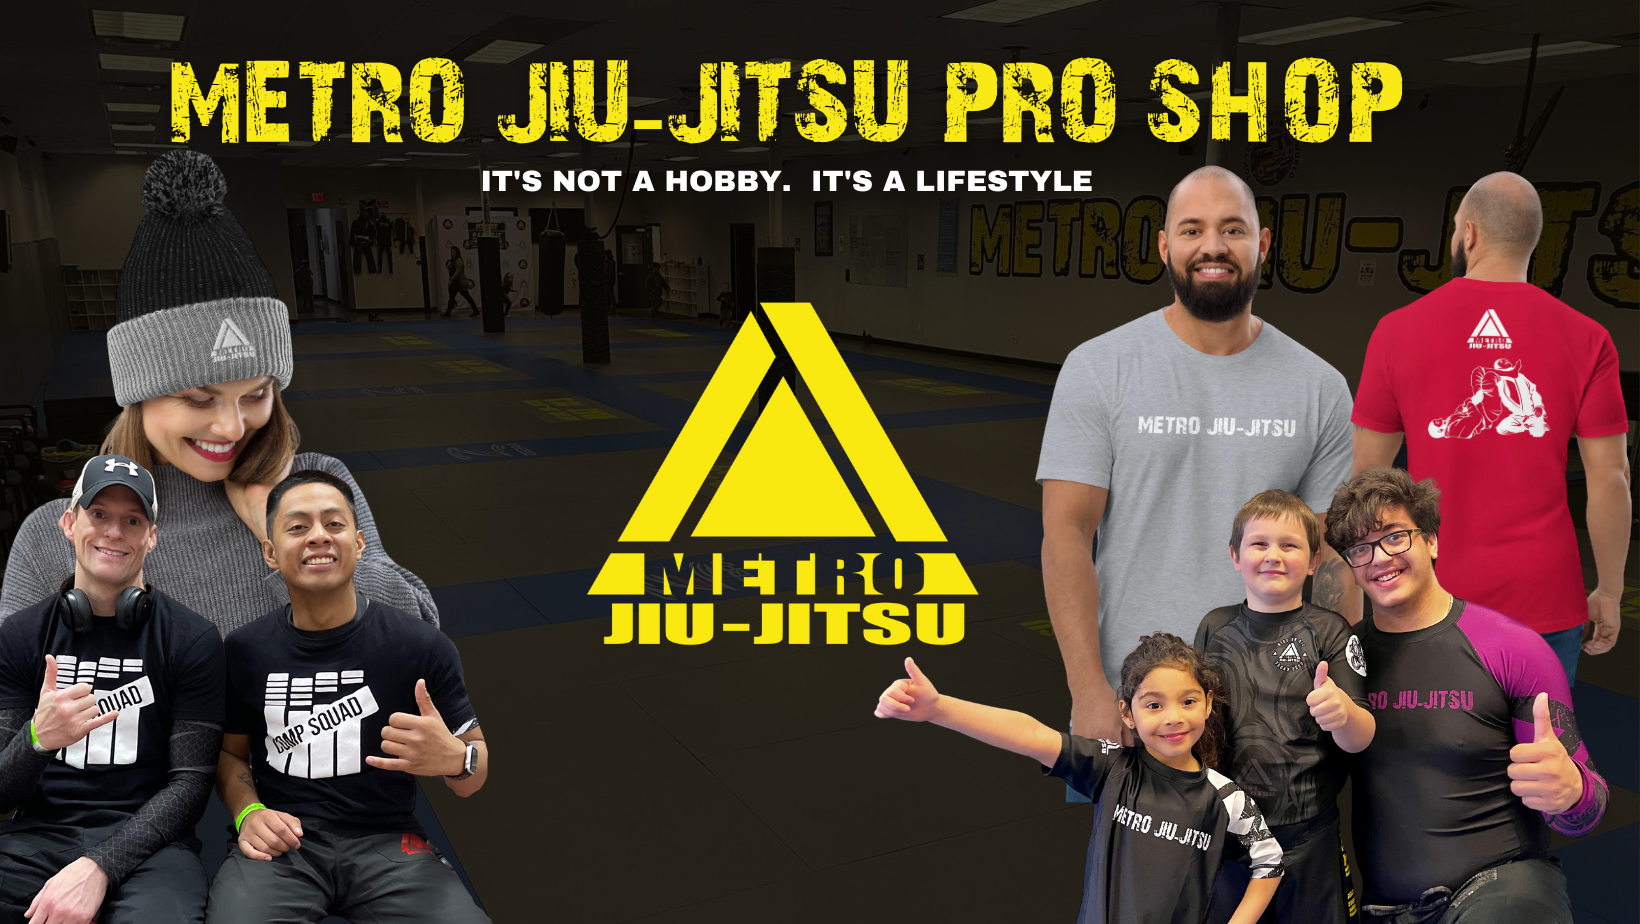 Jitsu Pro Shop